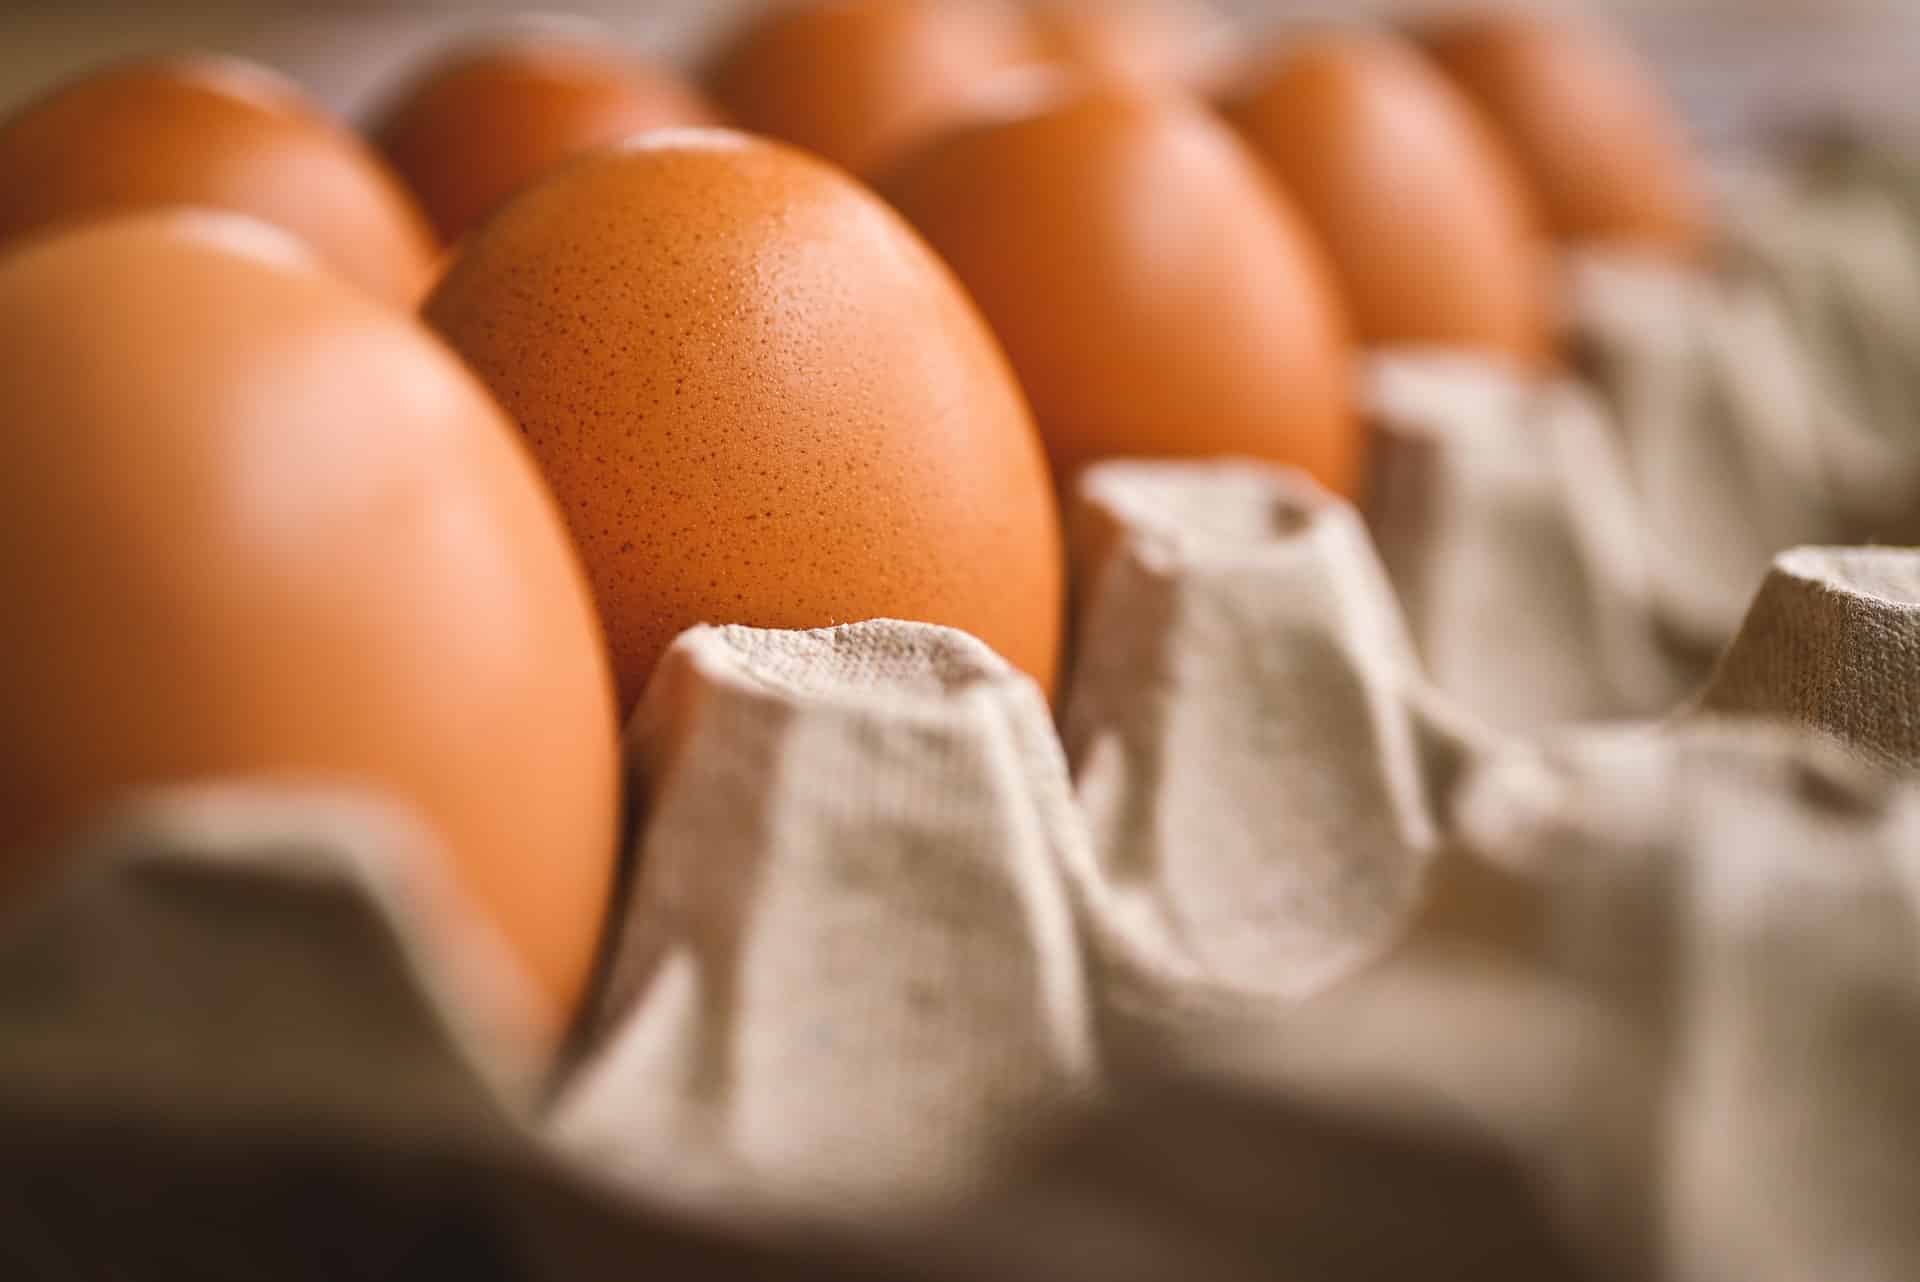 Украинските яйца са безопасни – това са показали резултатите от